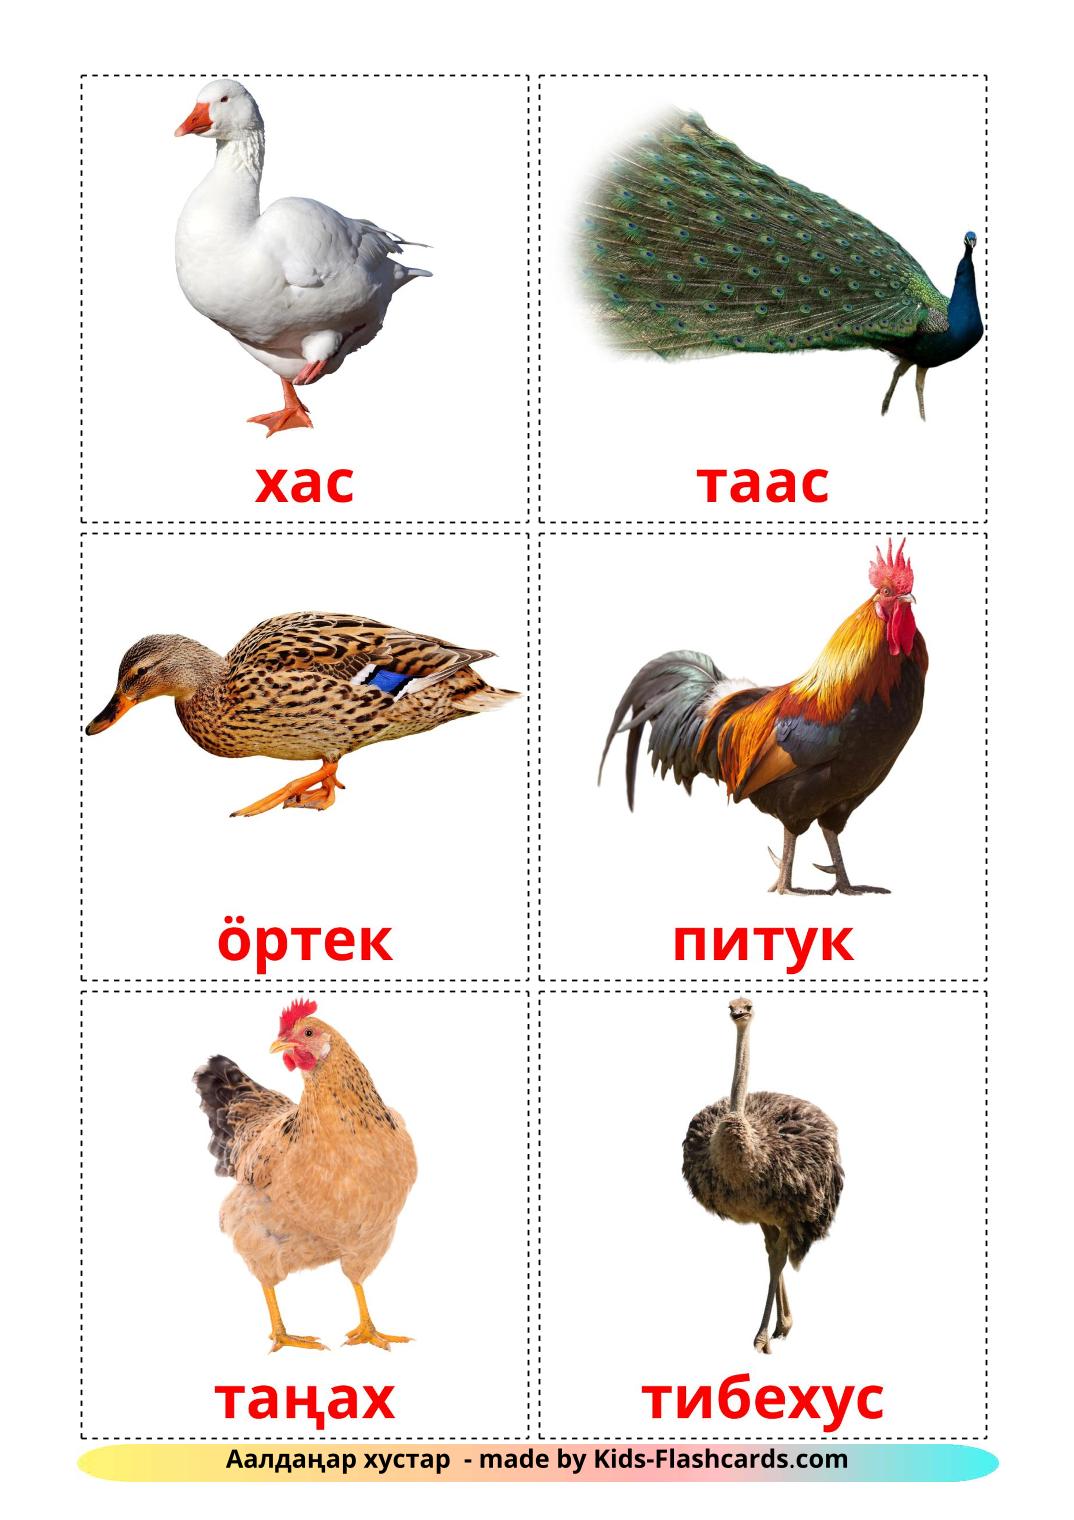 Aves da Quinta - 11 Flashcards kyrgyzes gratuitos para impressão